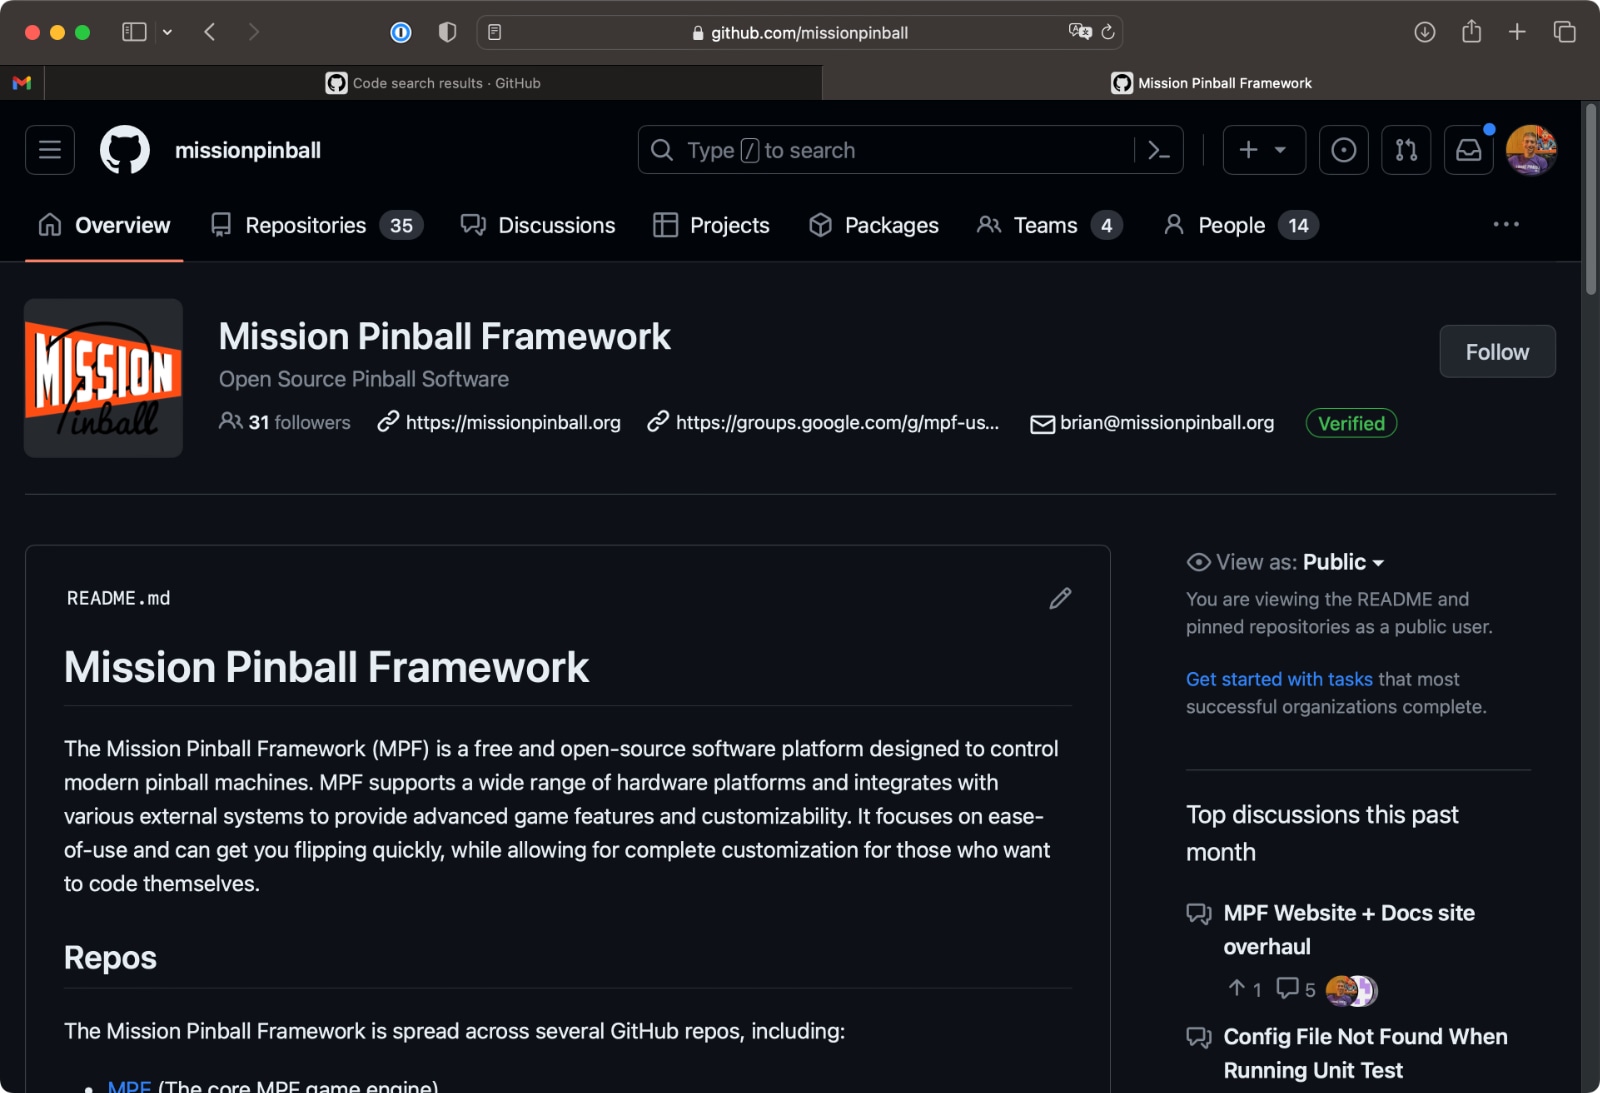 Mission Pinball homepage on GitHub.com